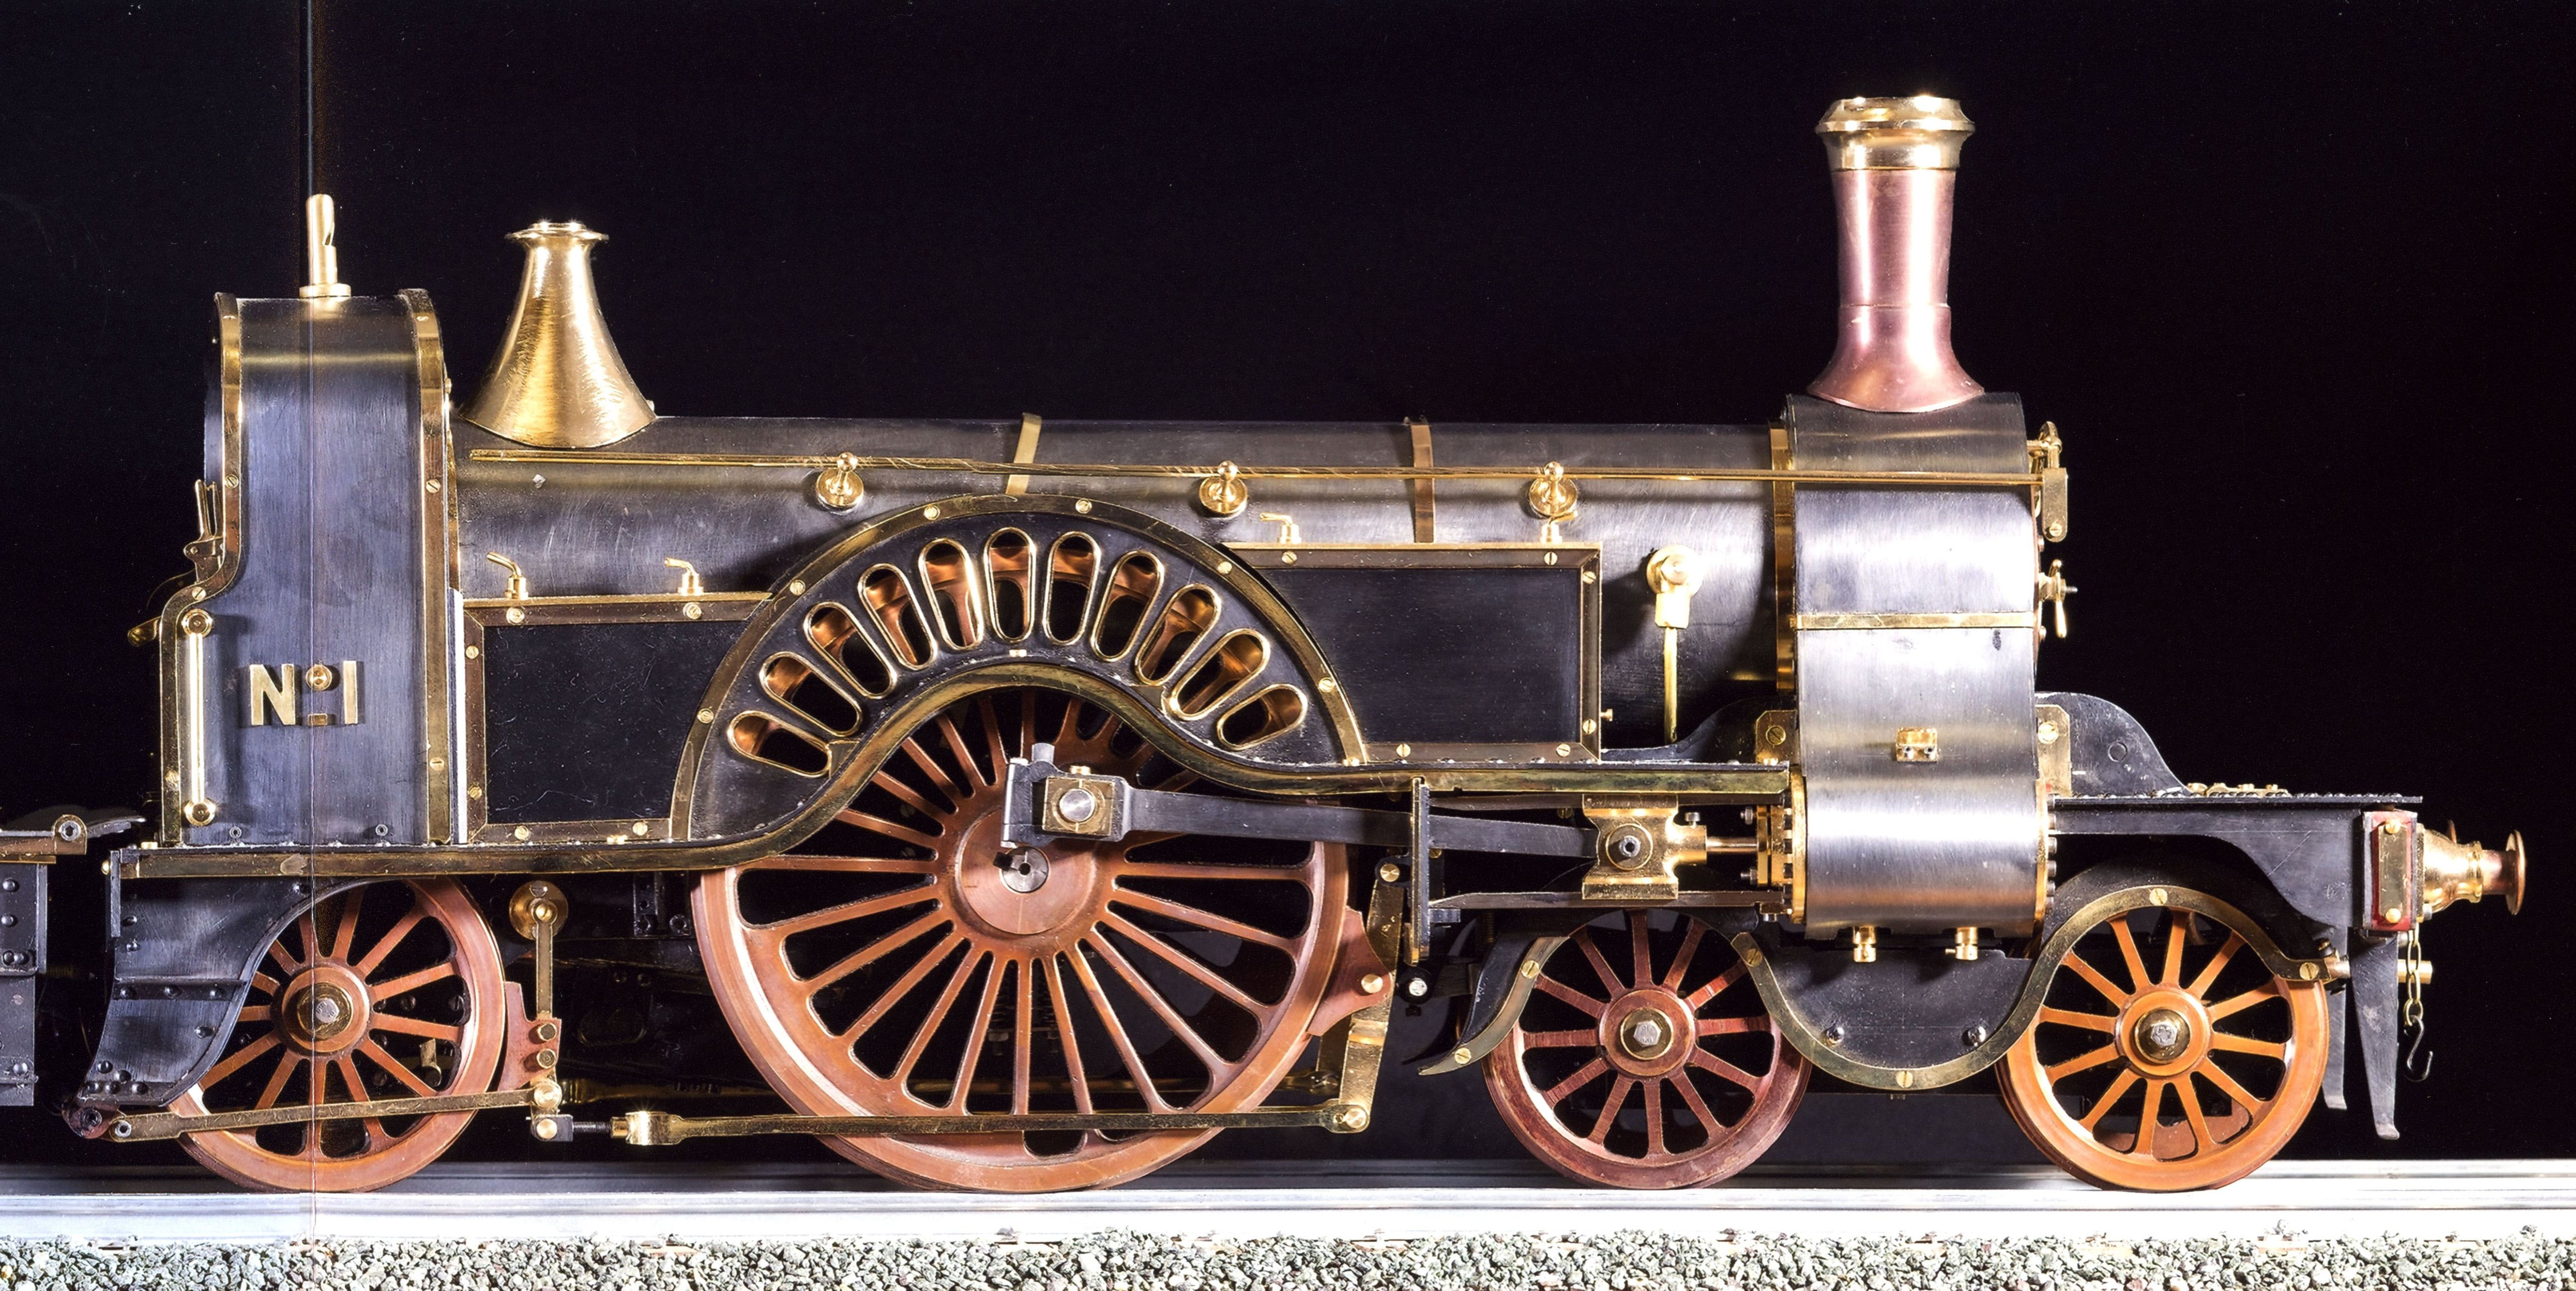 Modelo de locomotora de vapor GNR “Stirling Single” Nº 1